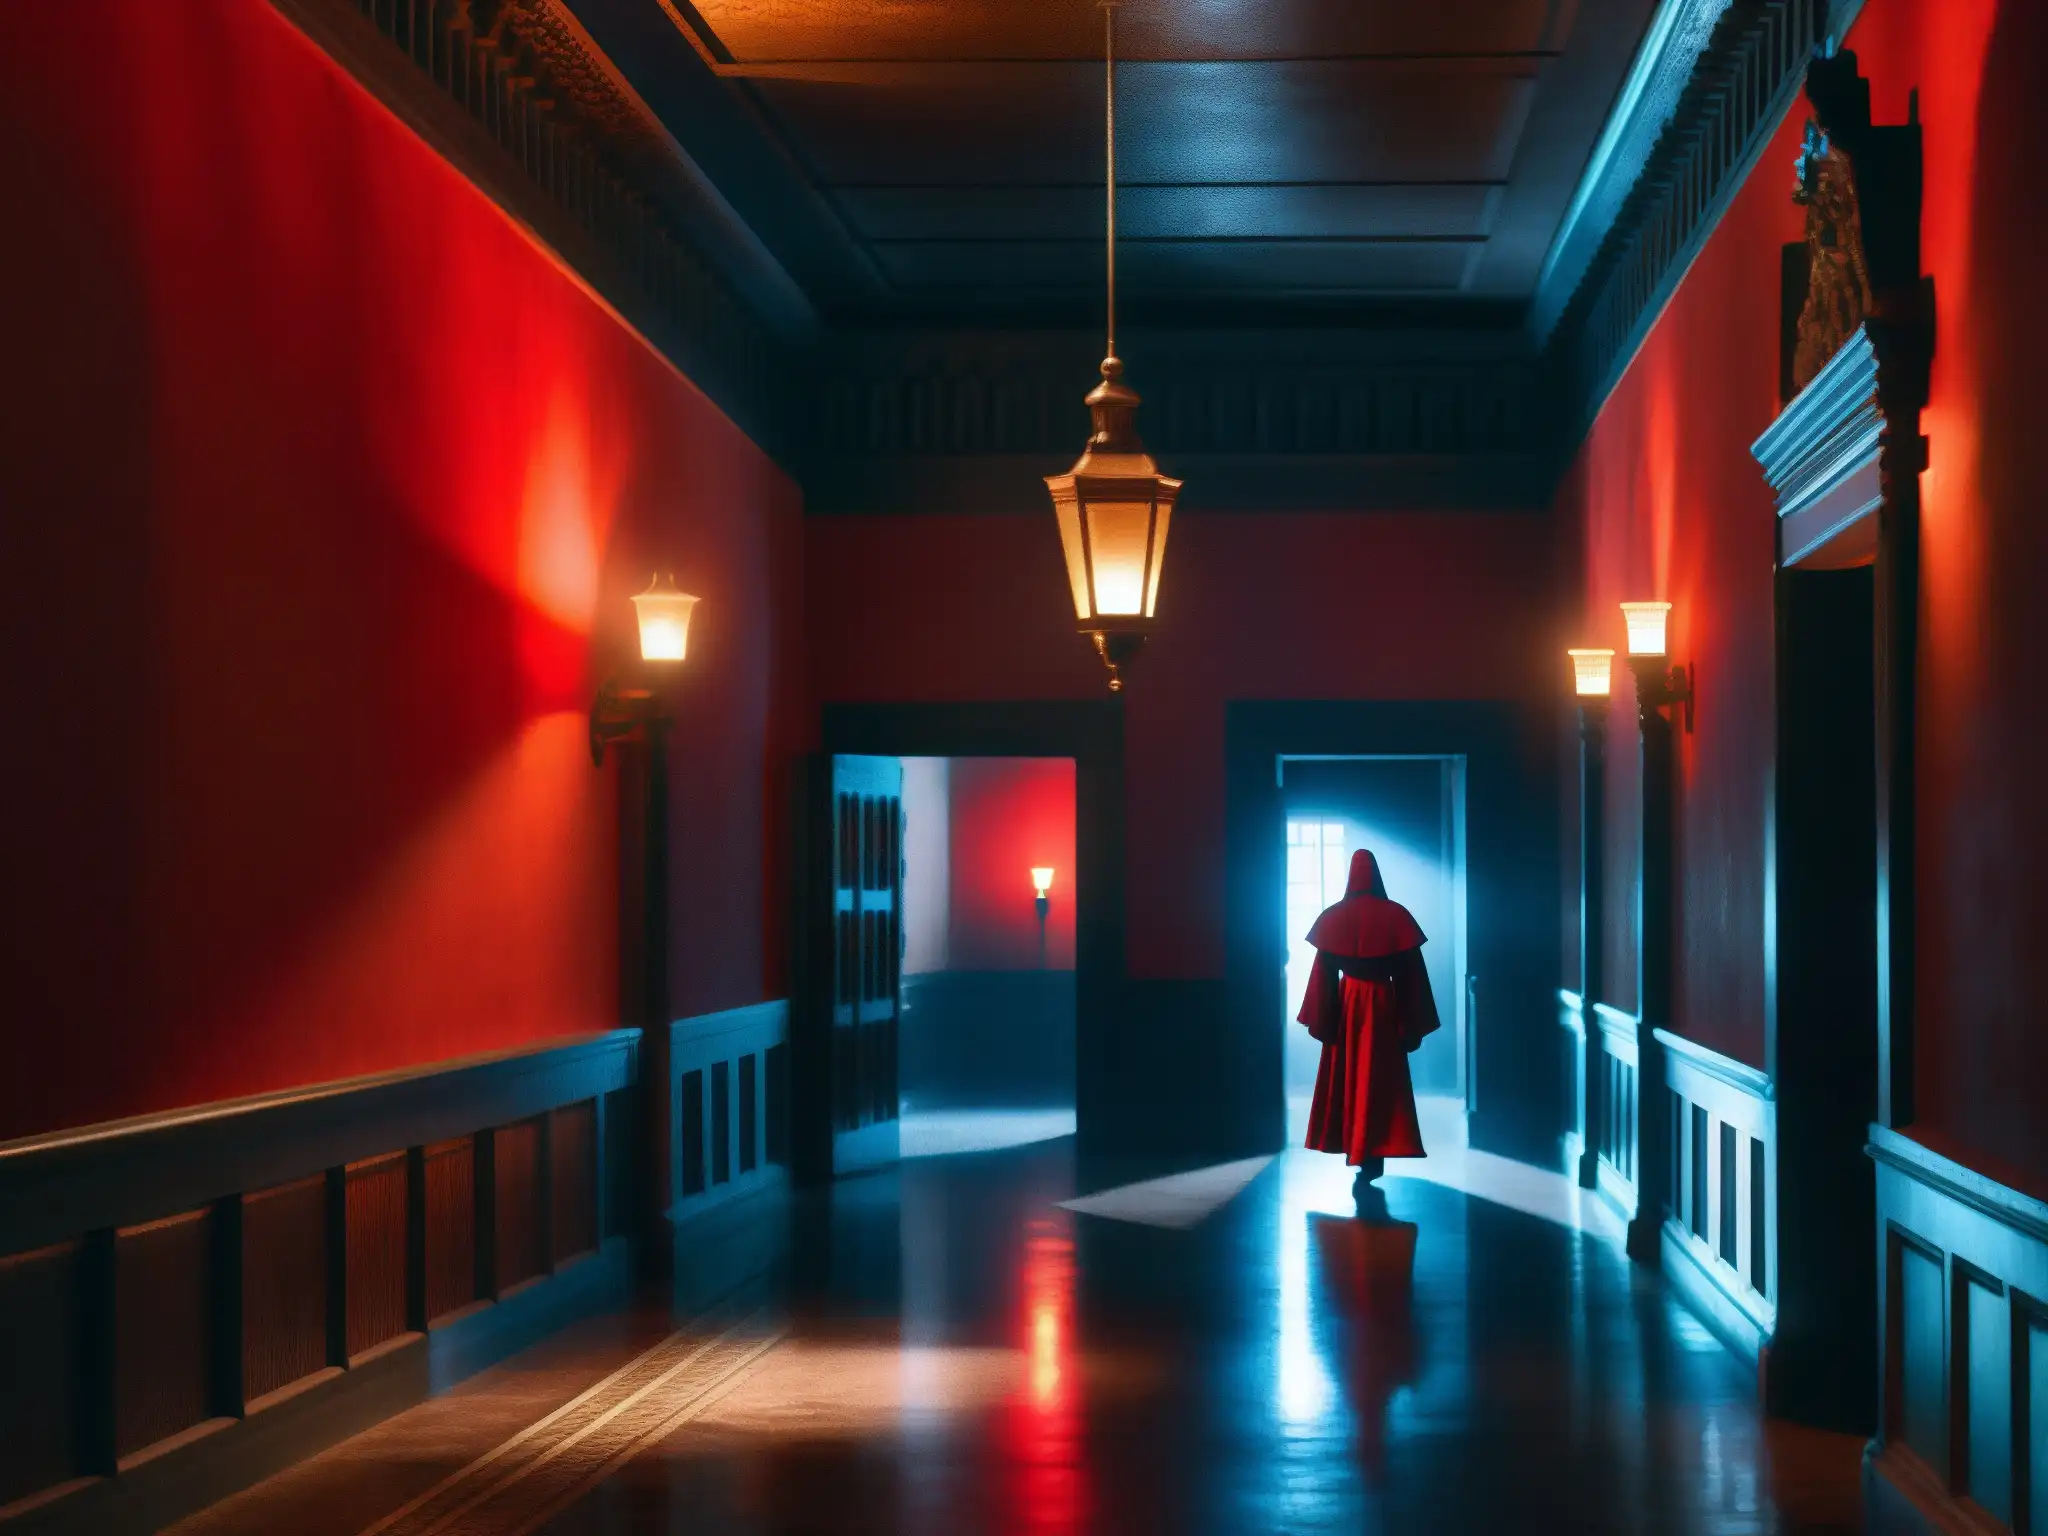 La misteriosa Dama de rojo atraviesa los corredores del Palacio San Francisco, creando una atmósfera intrigante y paranormal